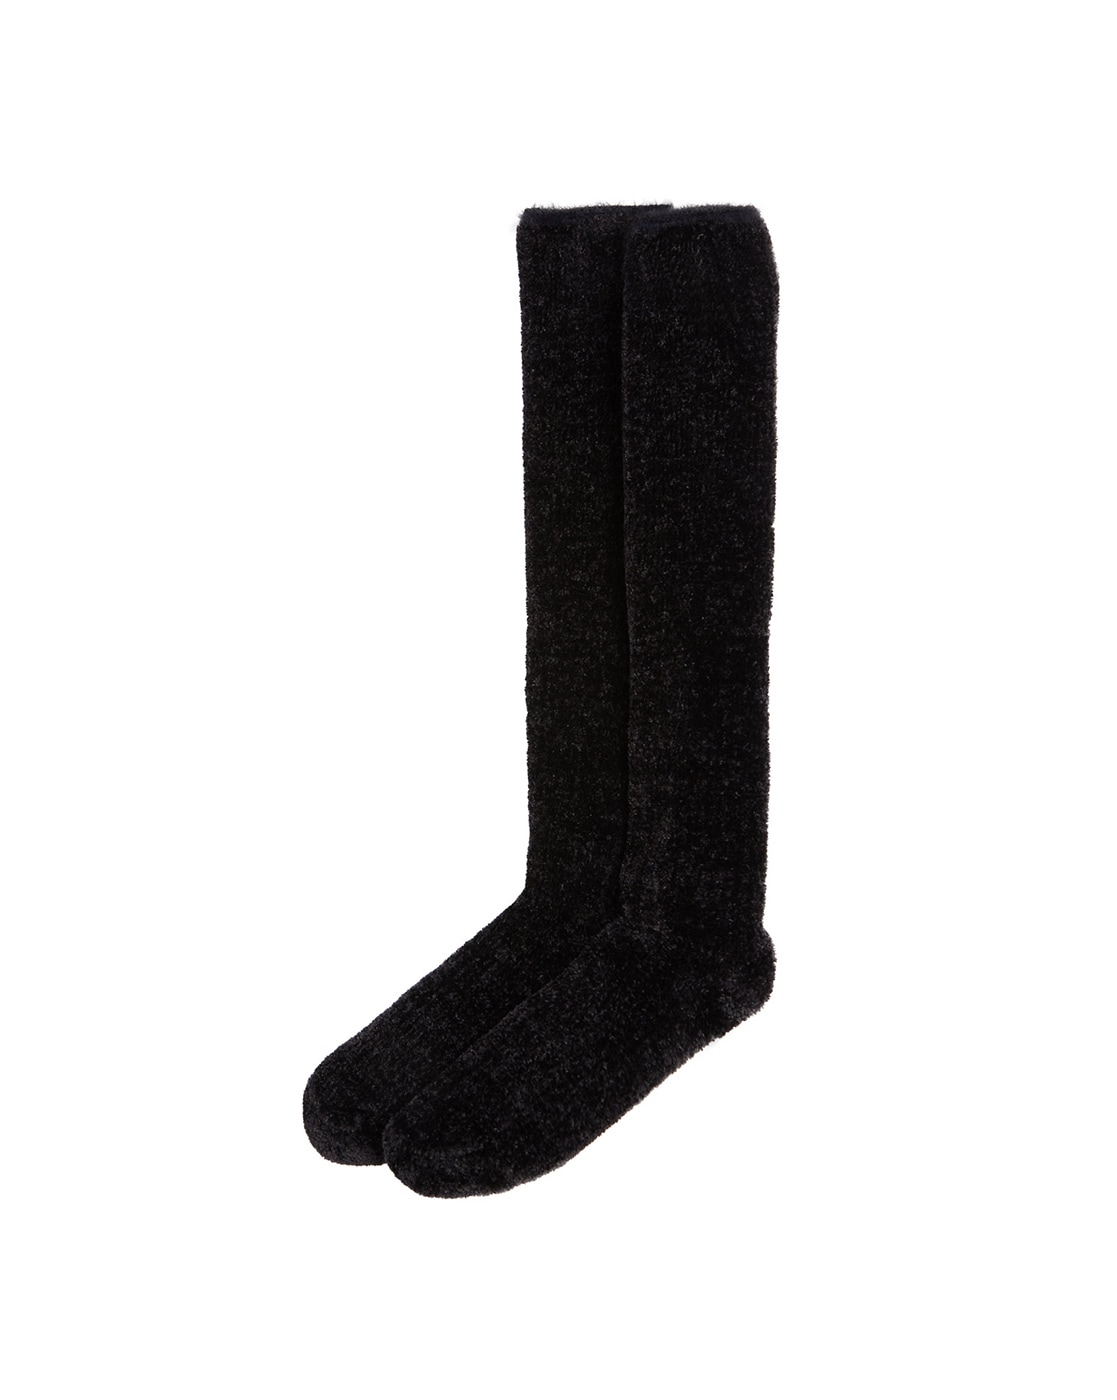 Buy Black Socks & Stockings for Women by Marks & Spencer Online